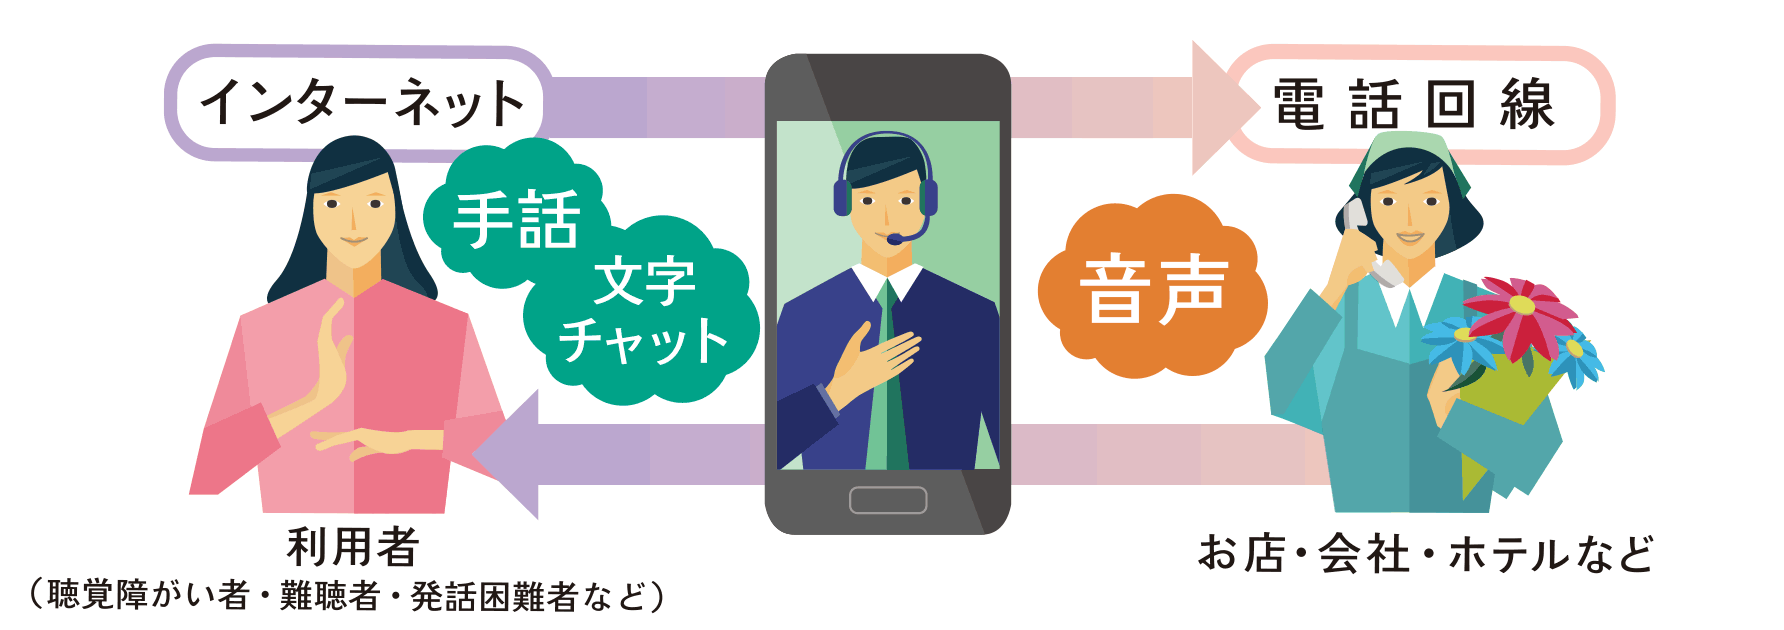 通訳オペレータが手話や文字と音声を通訳することにより、電話で双方向につなぐ様子